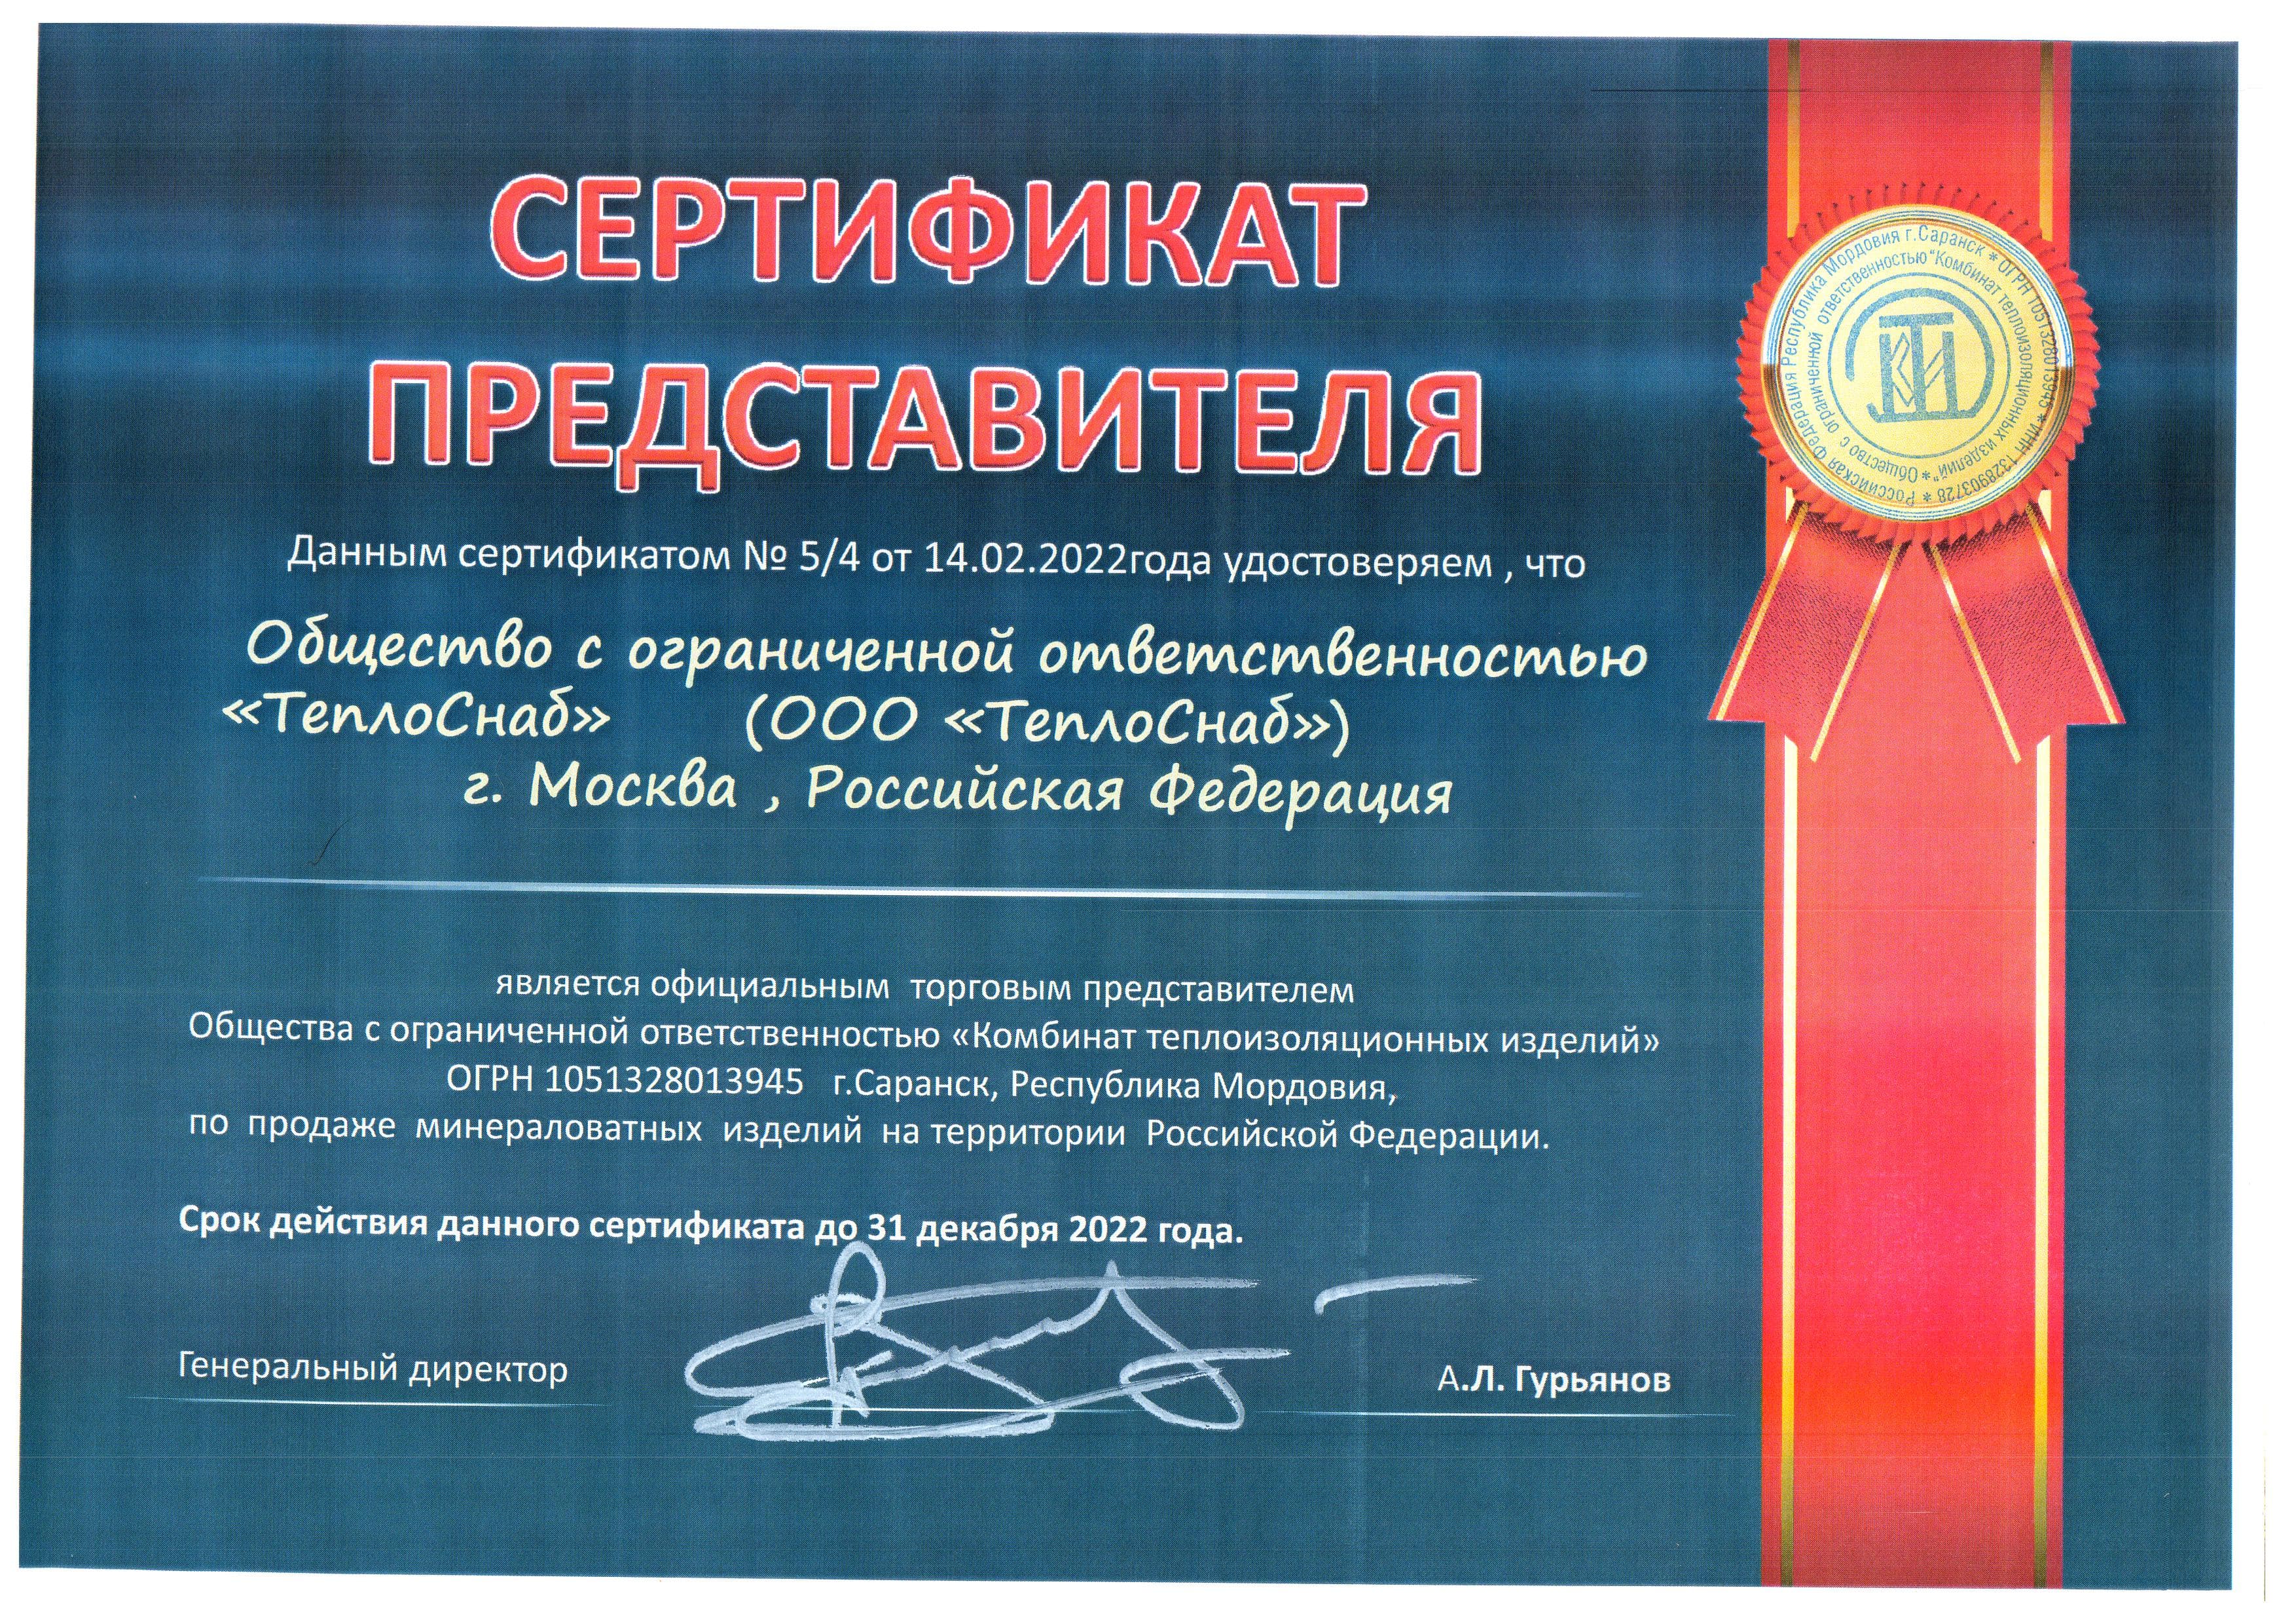 сертификат представителя